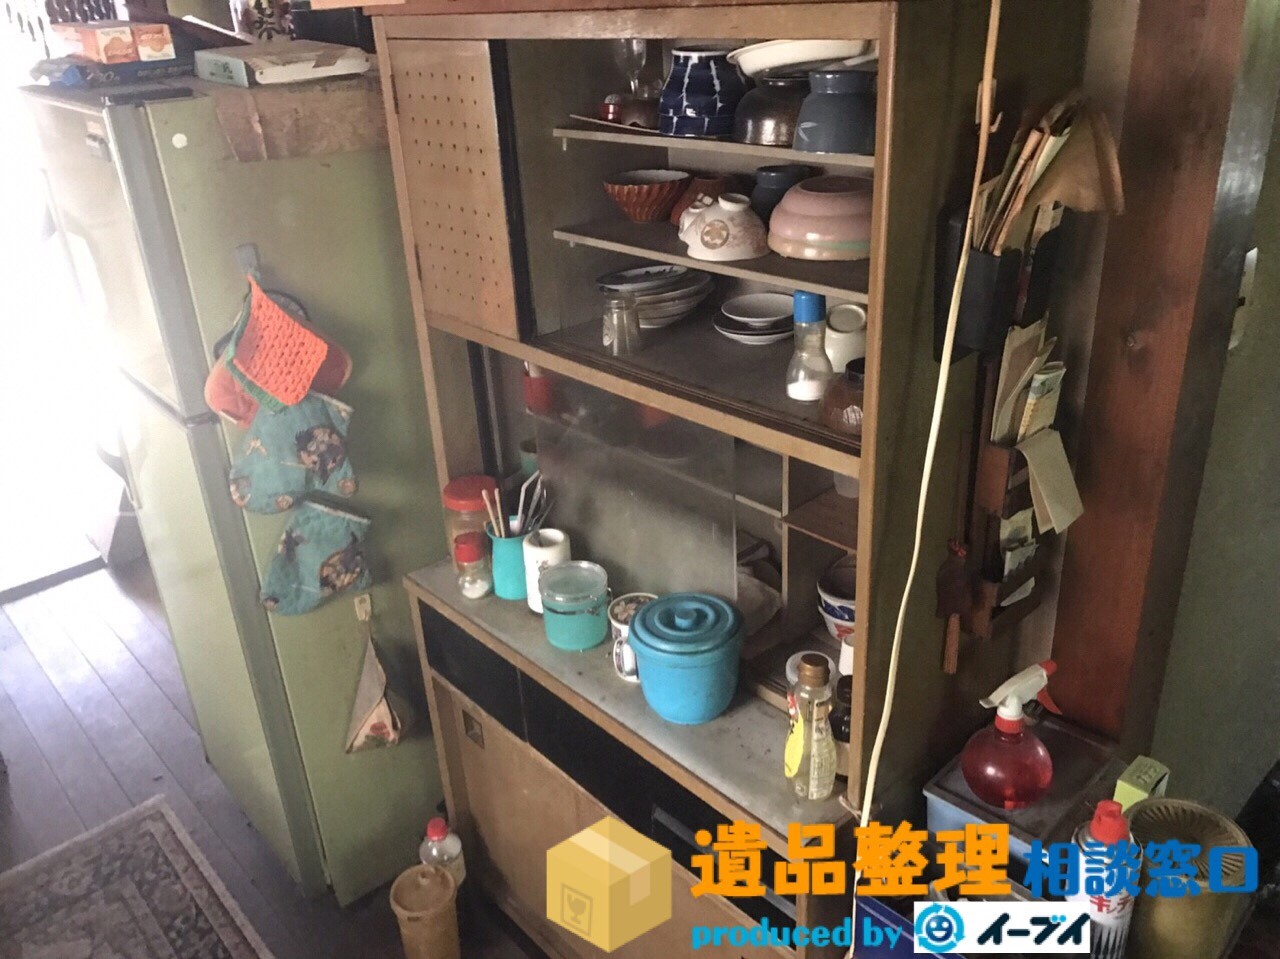 大阪府東大阪市で遺品整理の依頼で台所の生活用品の処分をしました。のアイキャッチ